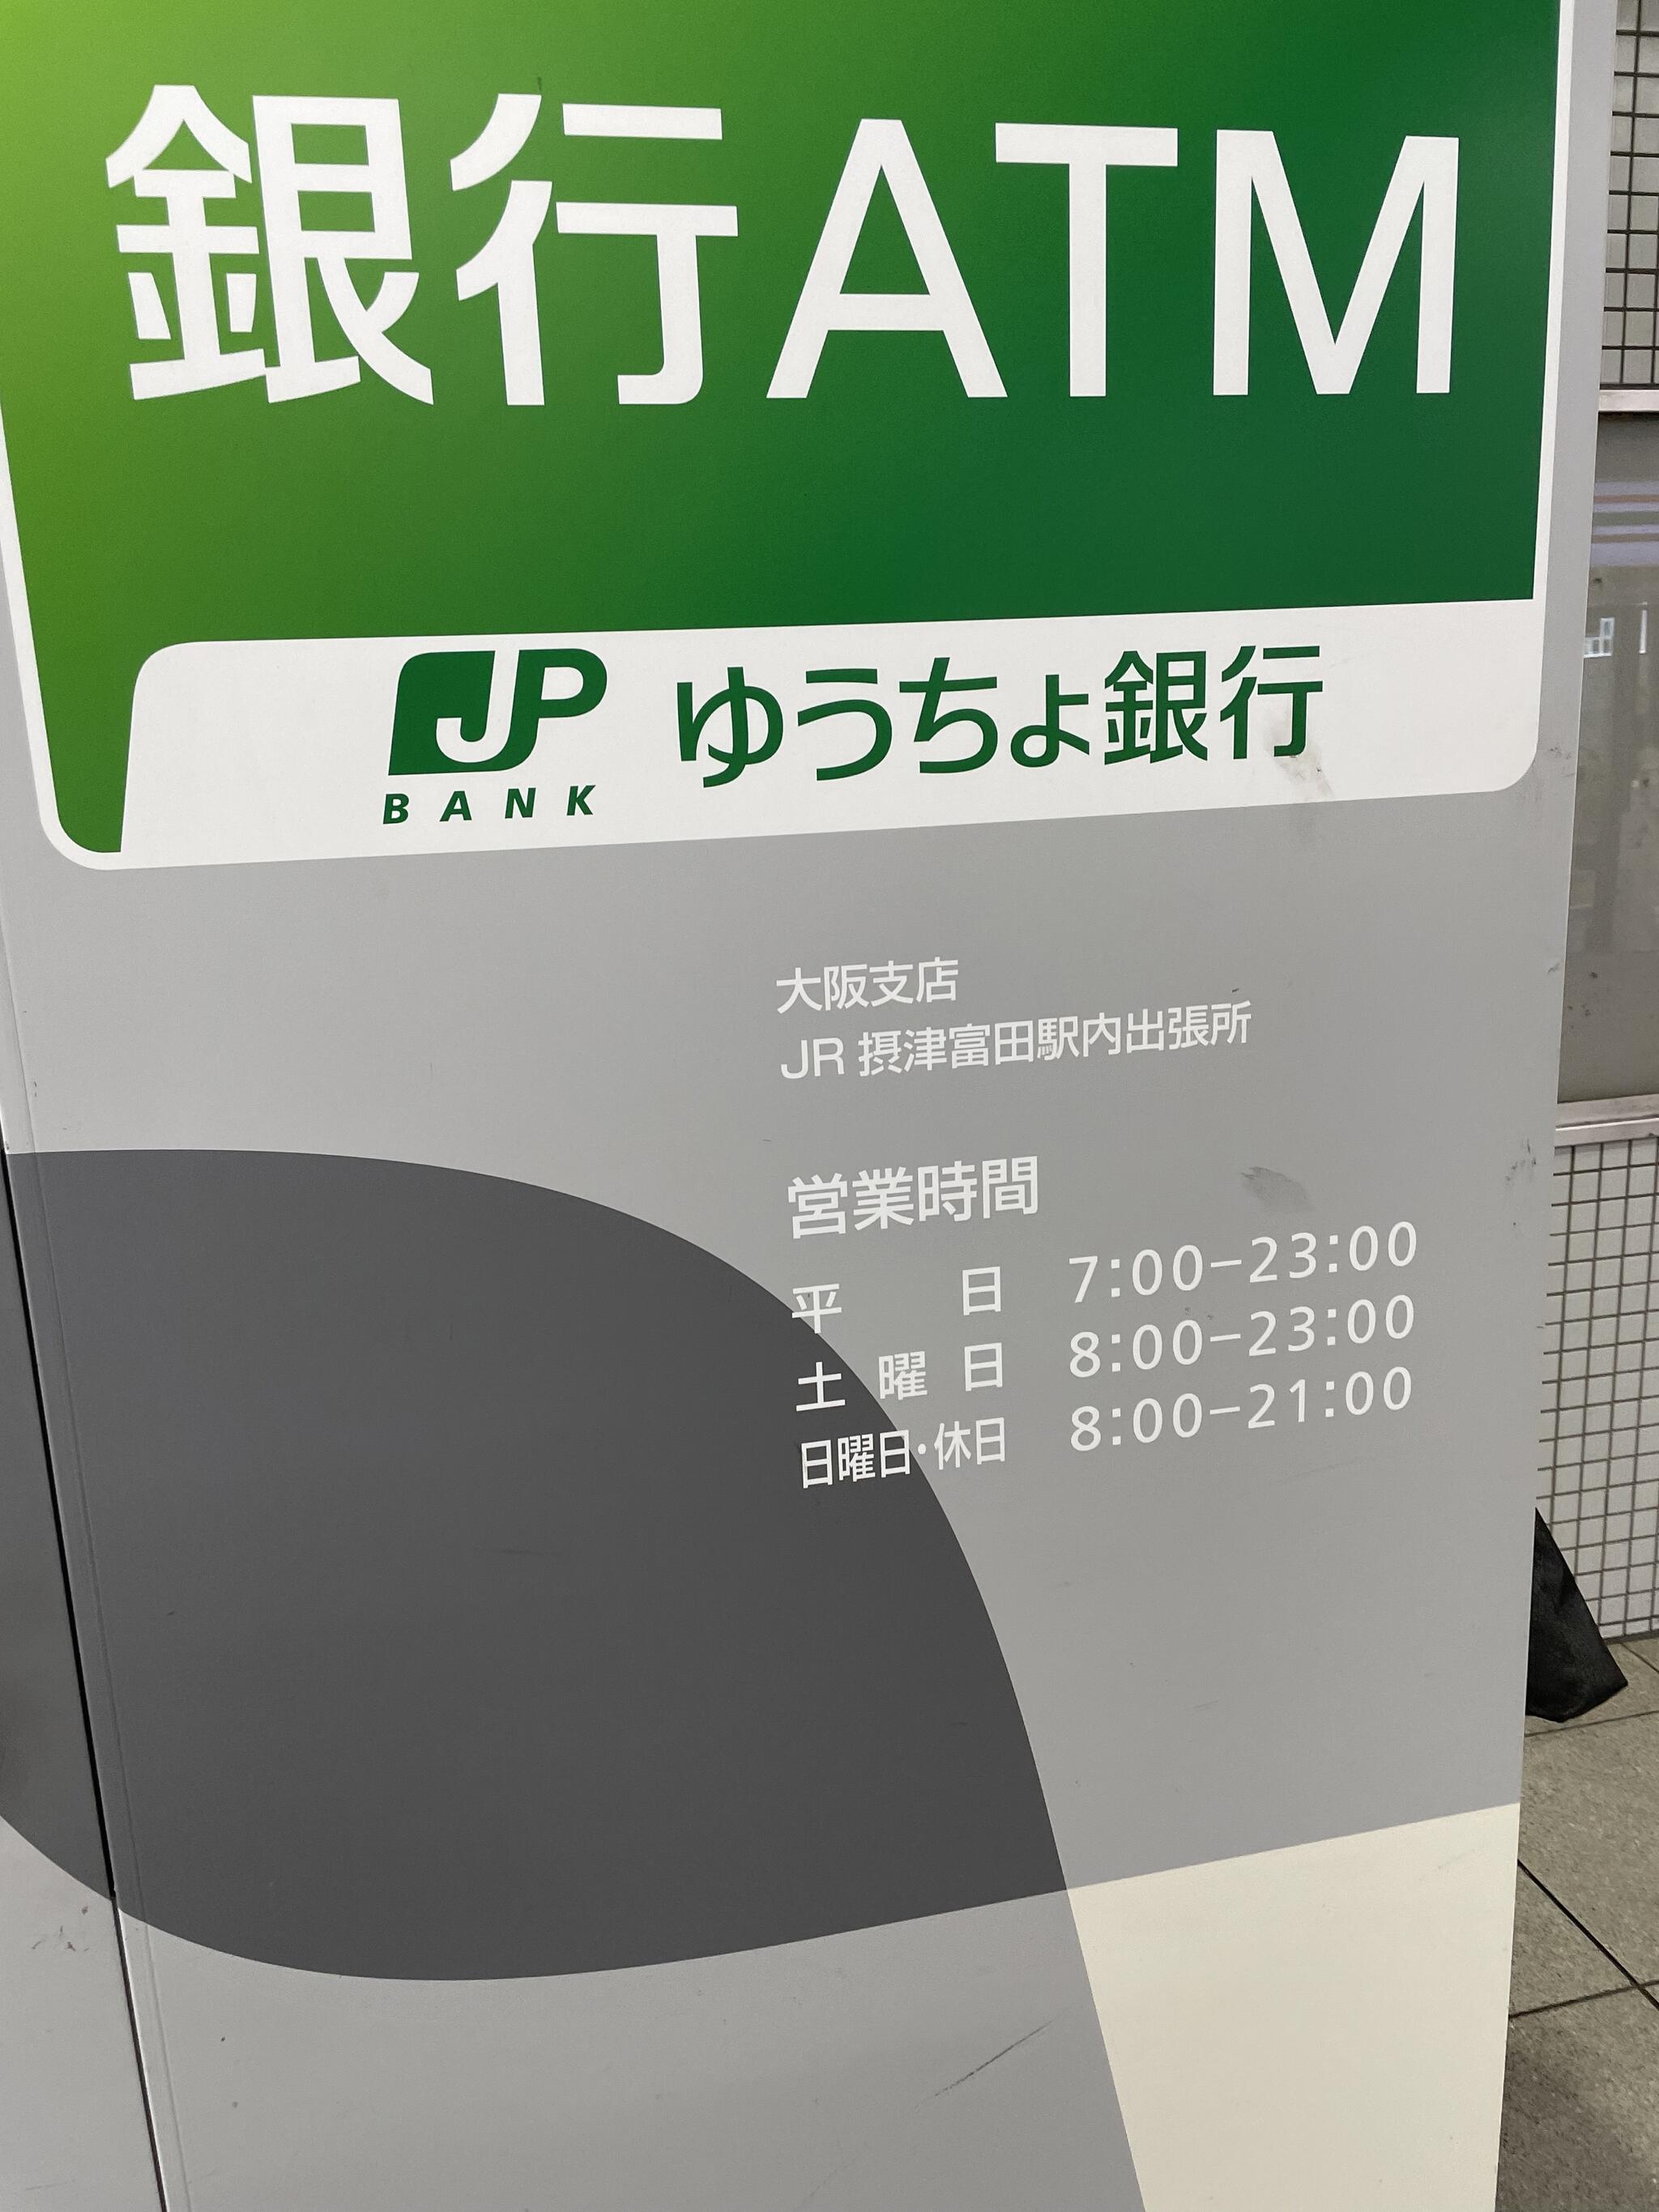 ゆうちょ銀行 ATM JR摂津富田駅内出張所の代表写真4